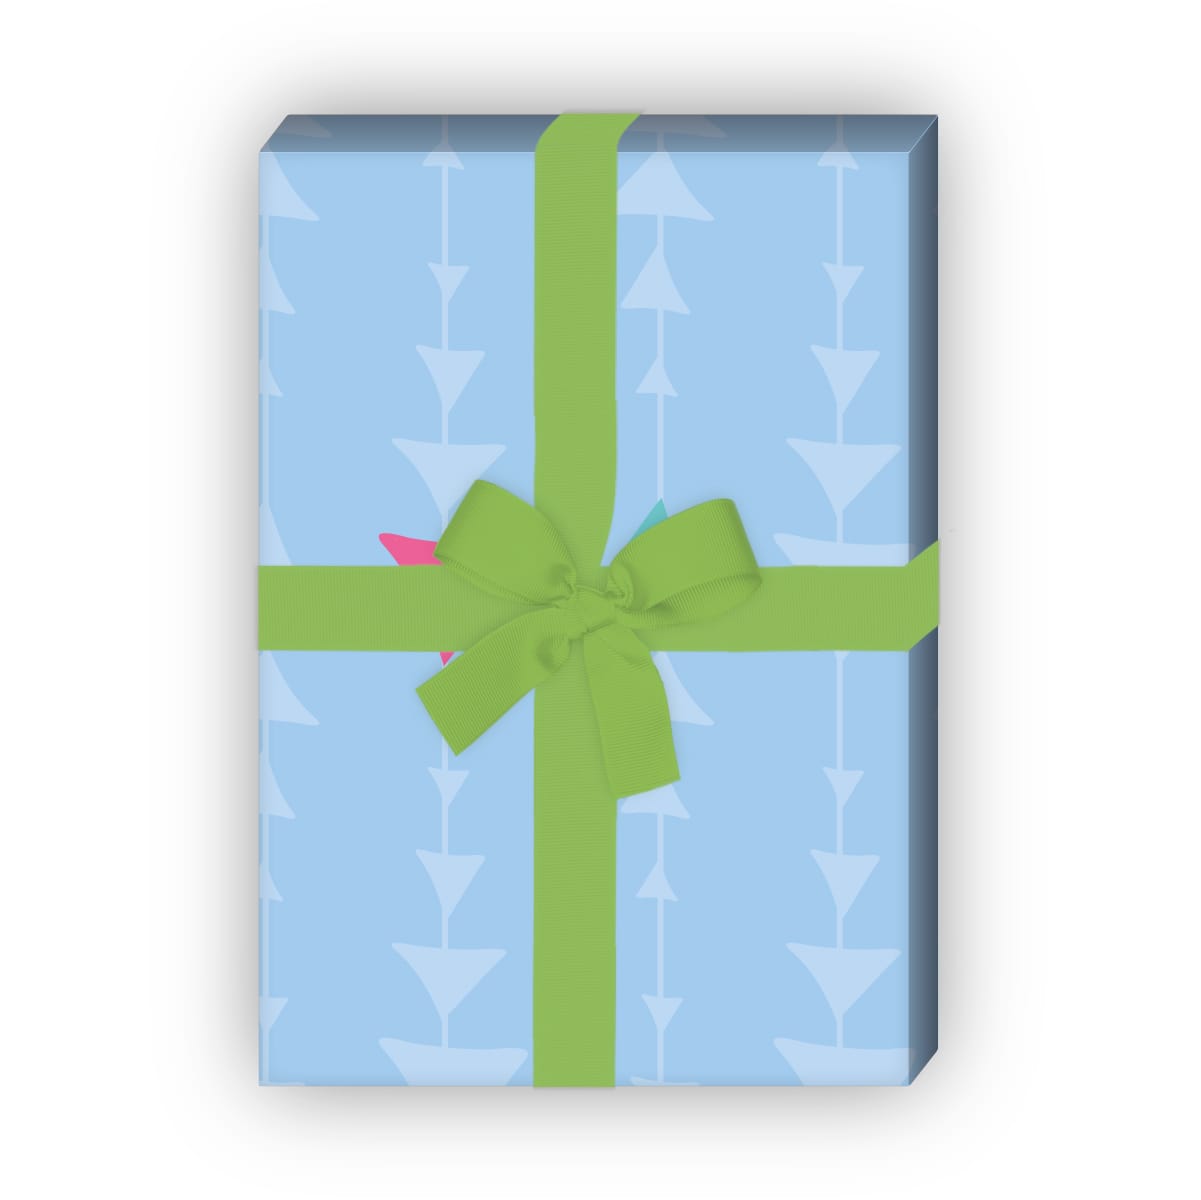 Kartenkaufrausch: Modernes Geschenkpapier mit grafischen aus unserer Designer Papeterie in hellblau